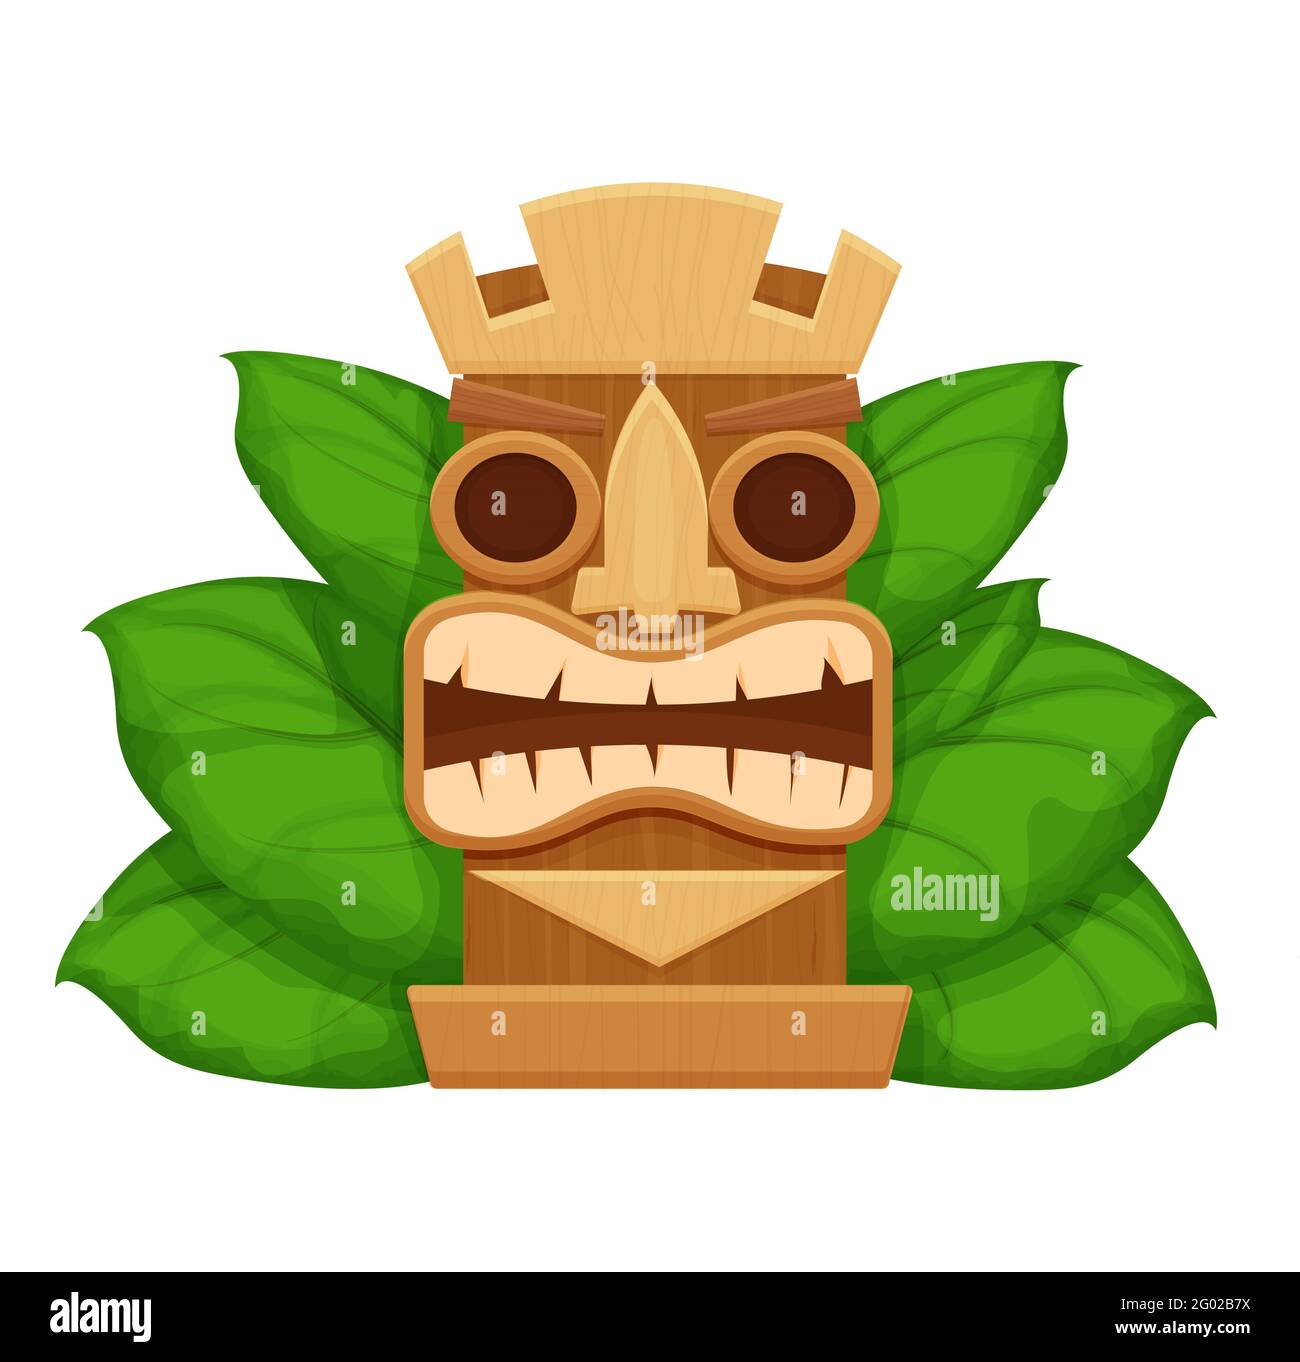 Tiki-Maske aus Holz, hawaianisches Symbol im Cartoon-Stil, strukturiert und detailliert isoliert auf weißem Hintergrund Vektorgrafik. Totem, ethnische Dekoration. Furchteinflößender gott, Idol. Vektorgrafik Stock Vektor